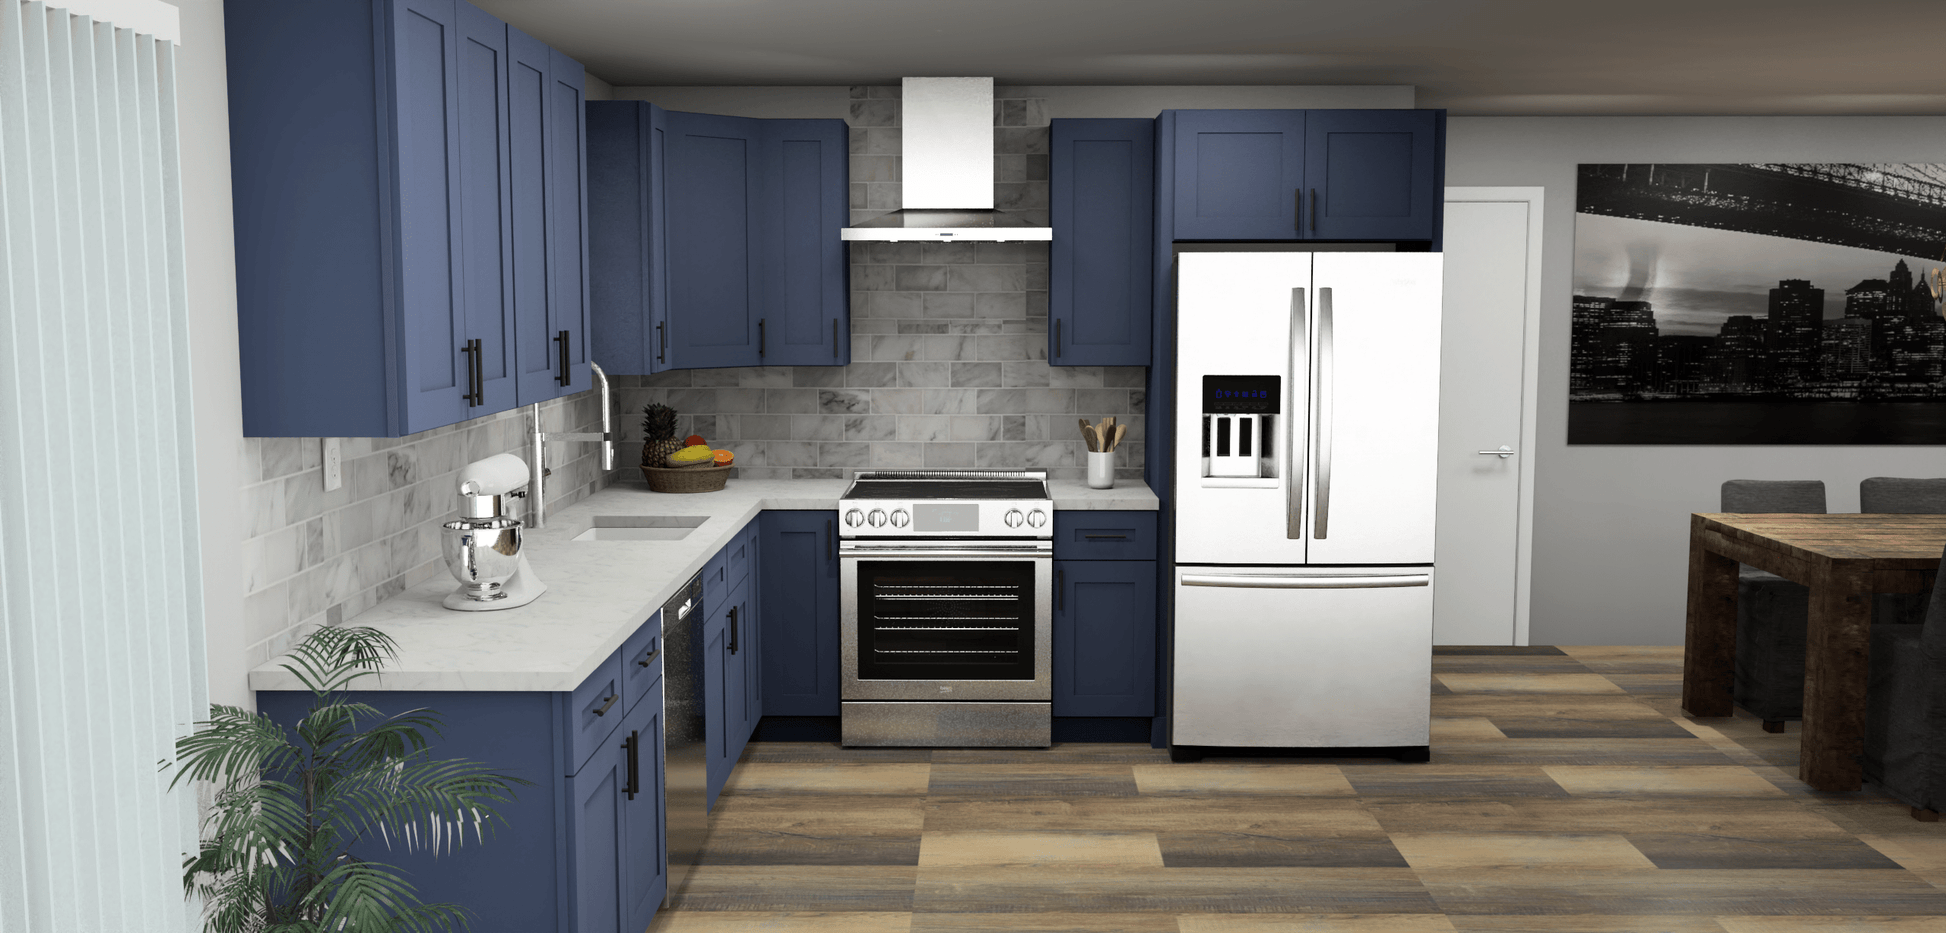 LessCare Danbury Blue 11 x 10 L Shaped Kitchen Front Layout Photo